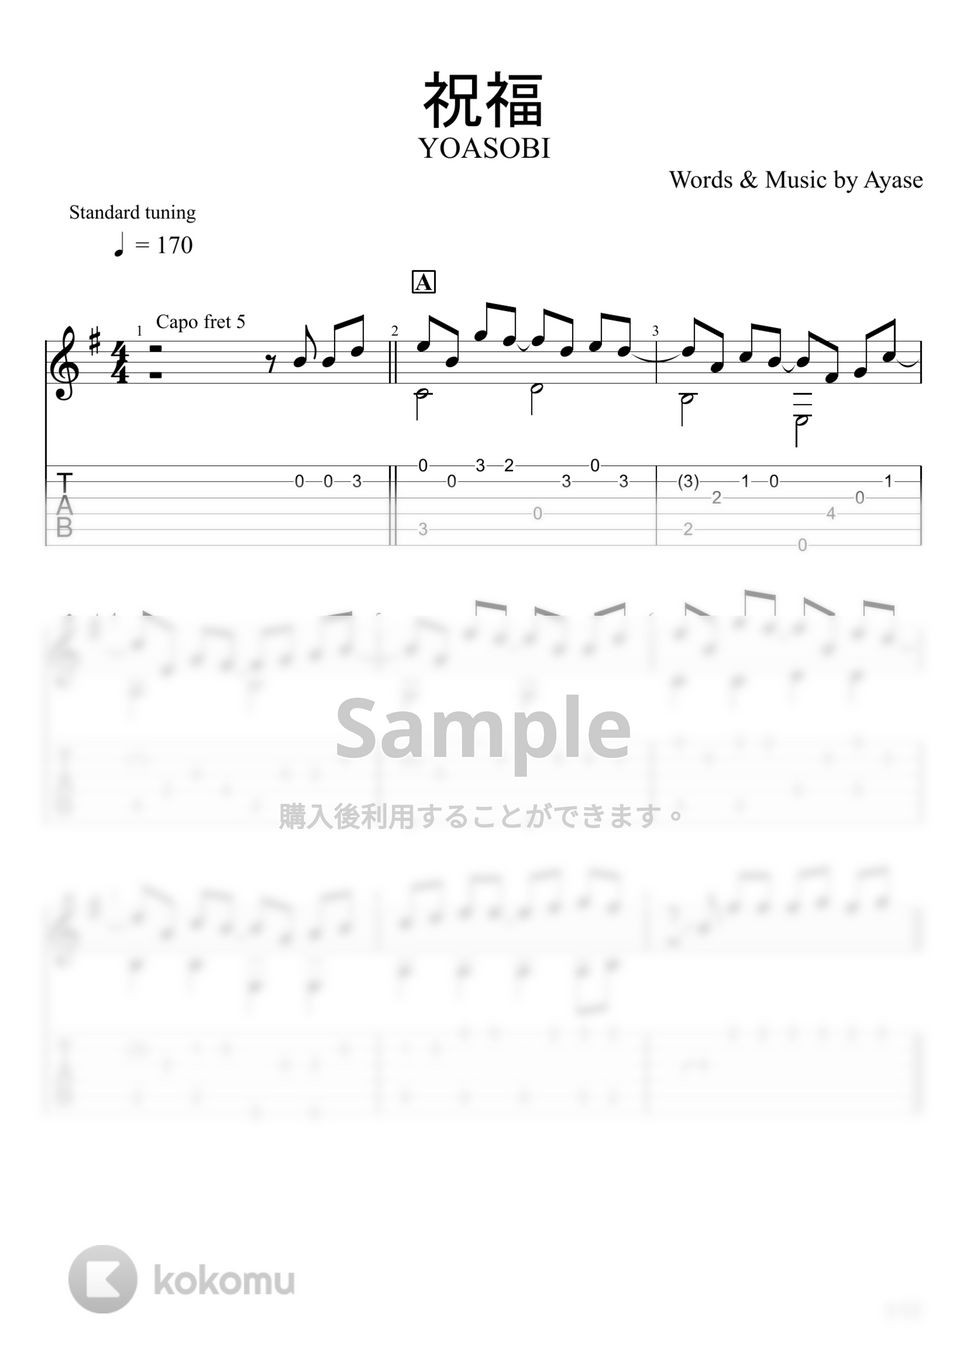 YOASOBI - 祝福 (ソロギター) by u3danchou